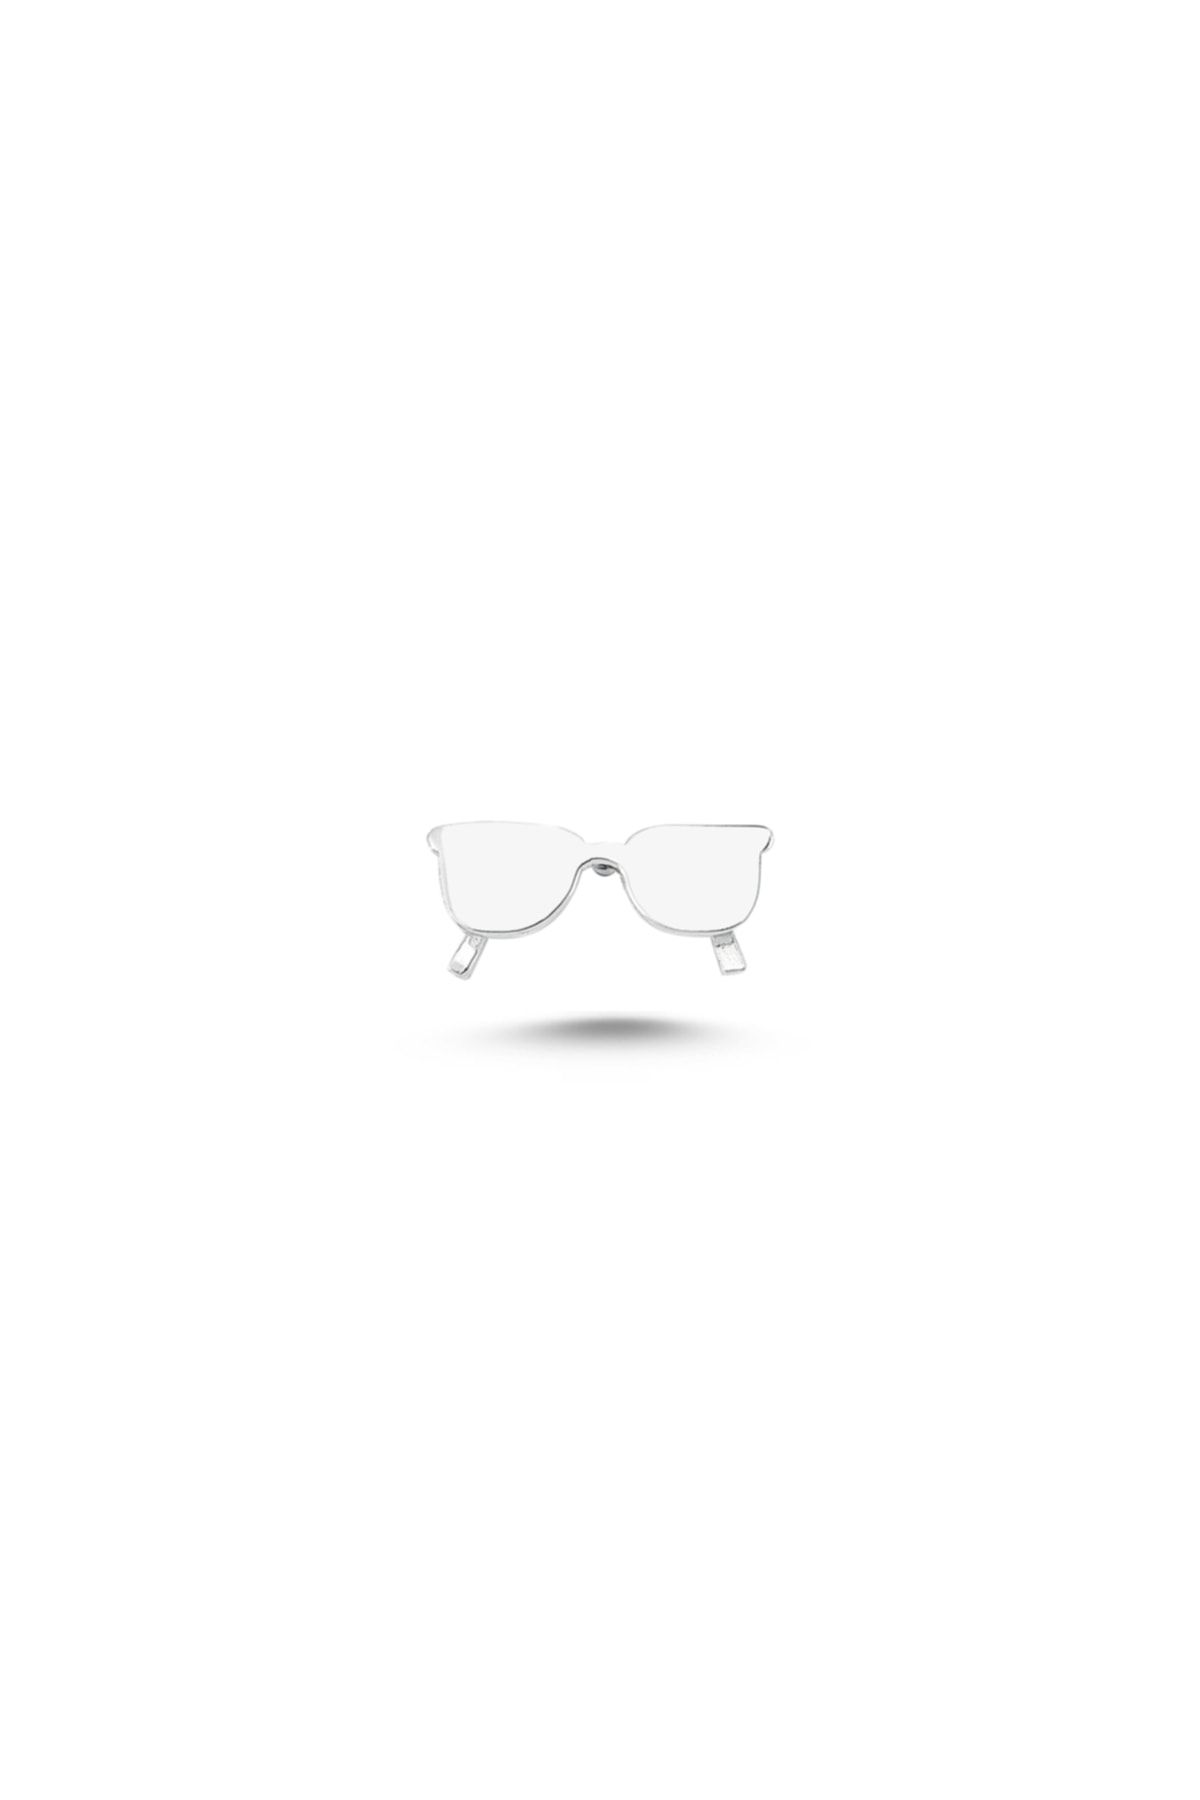 Ecce Unisex Beyaz Mini Pin Güneş Gözlüğü Gümüş Üzeri Altın Kaplamalı Broş / Rozet